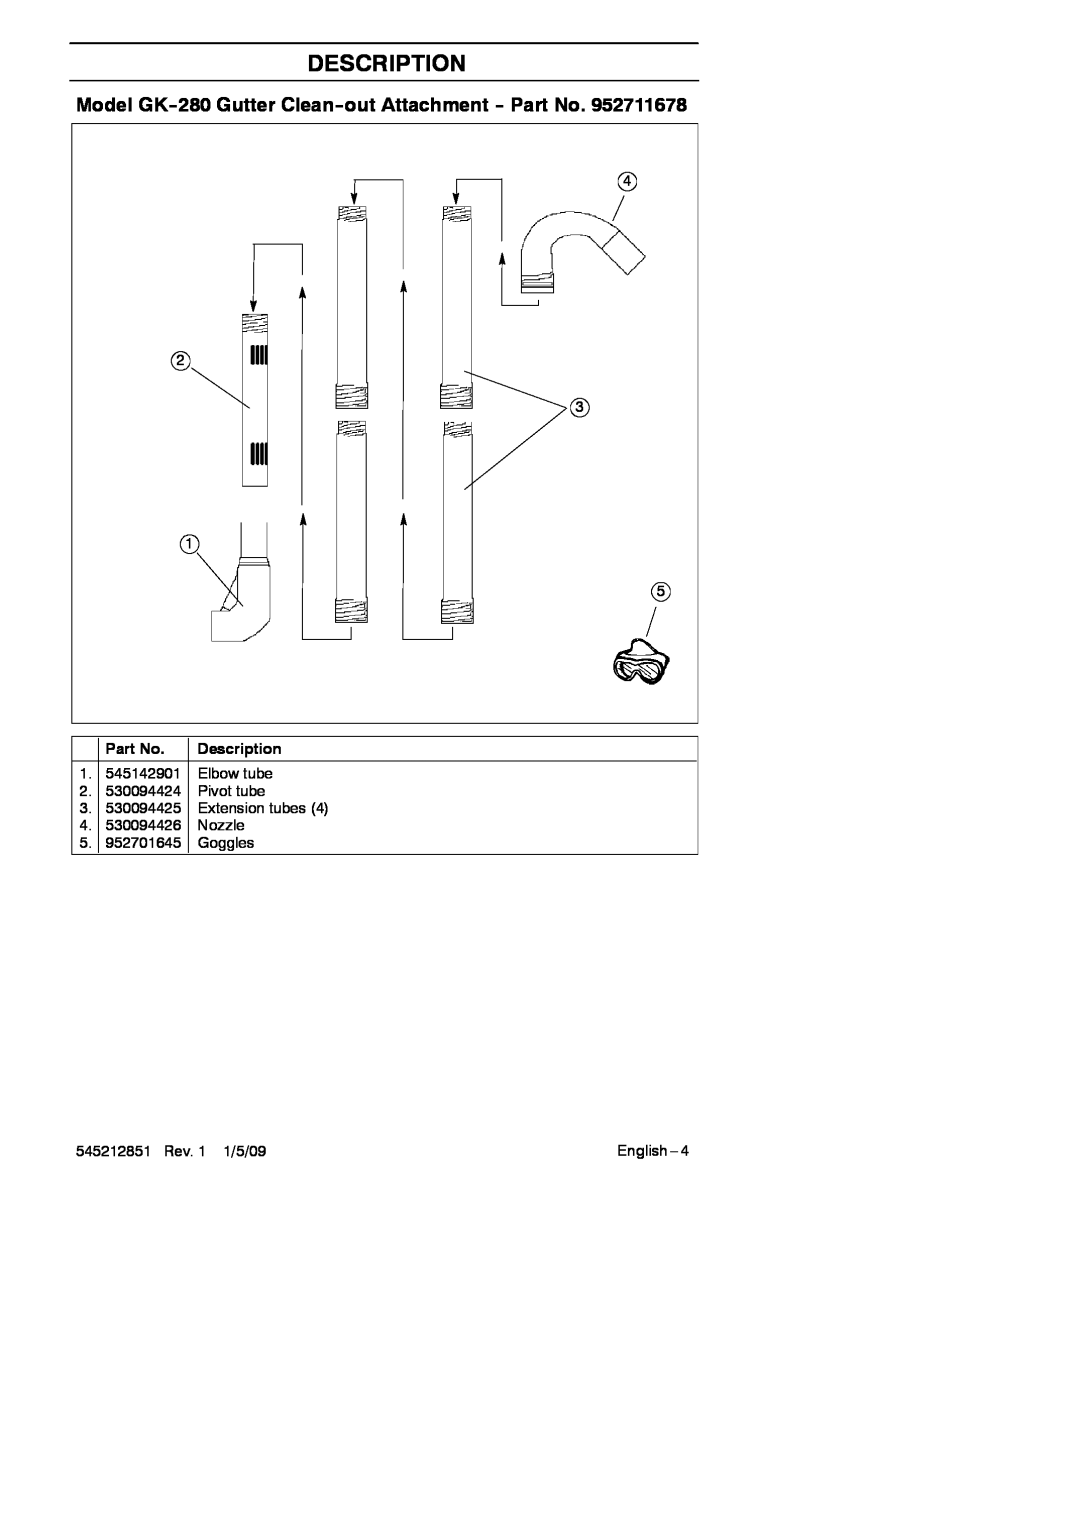 RedMax GK-280 manual Description, Model GK--280 Gutter Clean--out Attachment -- Part No, 545212851 Rev. 1 1/5/09, English 